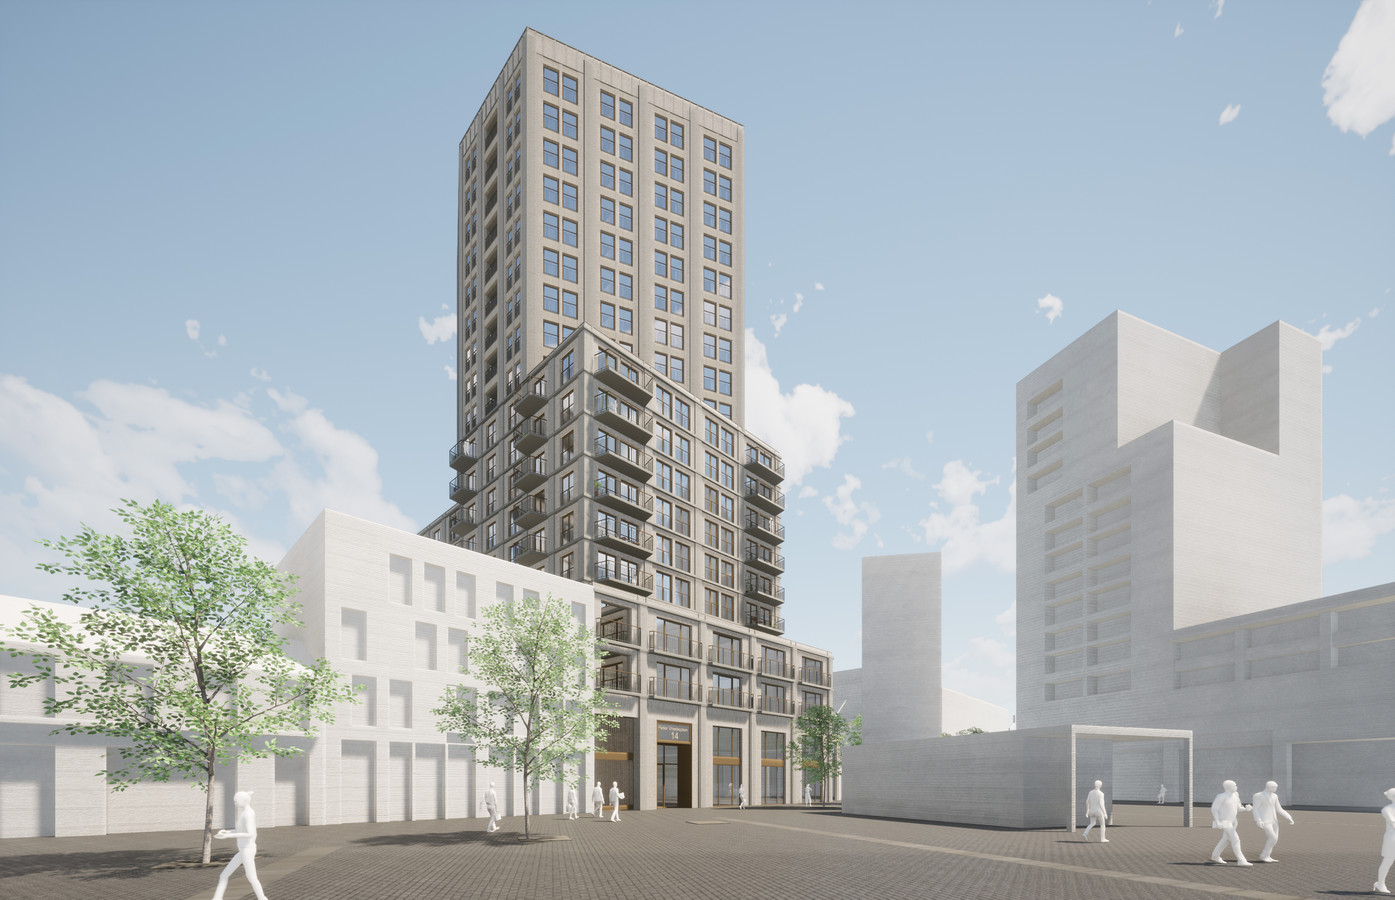 Een impressie van de nieuwe woontoren, gezien vanaf het Pieter Vreedeplein, met rechts de bestaande hoogbouw.